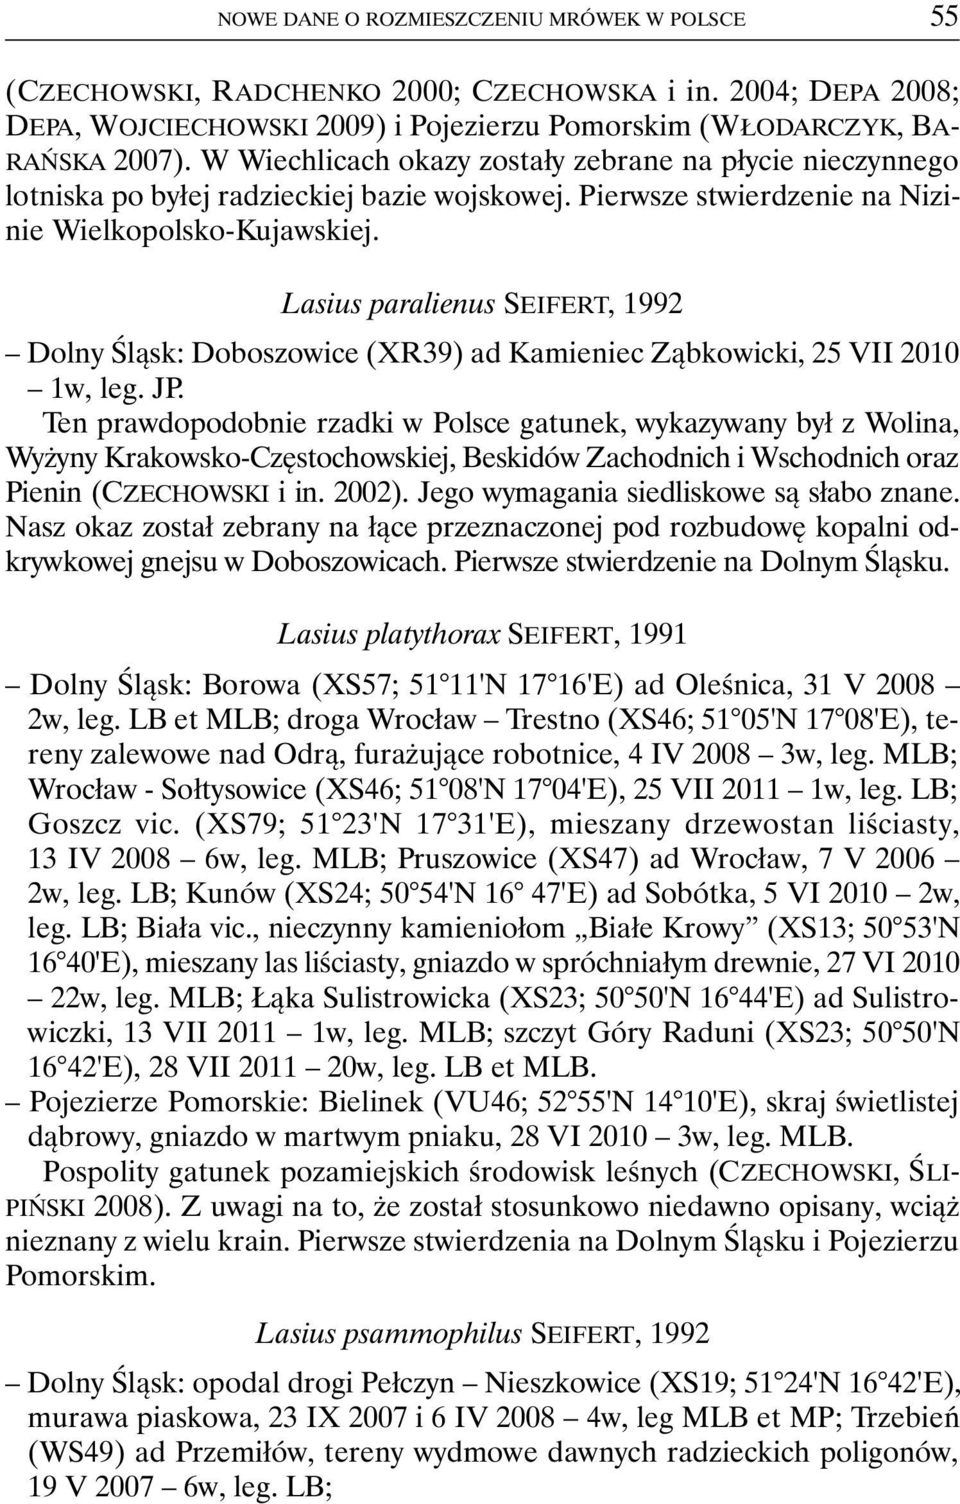 Lasius paralienus SEIFERT, 1992 Dolny Śląsk: Doboszowice (XR39) ad Kamieniec Ząbkowicki, 25 VII 2010 1w, leg. JP.